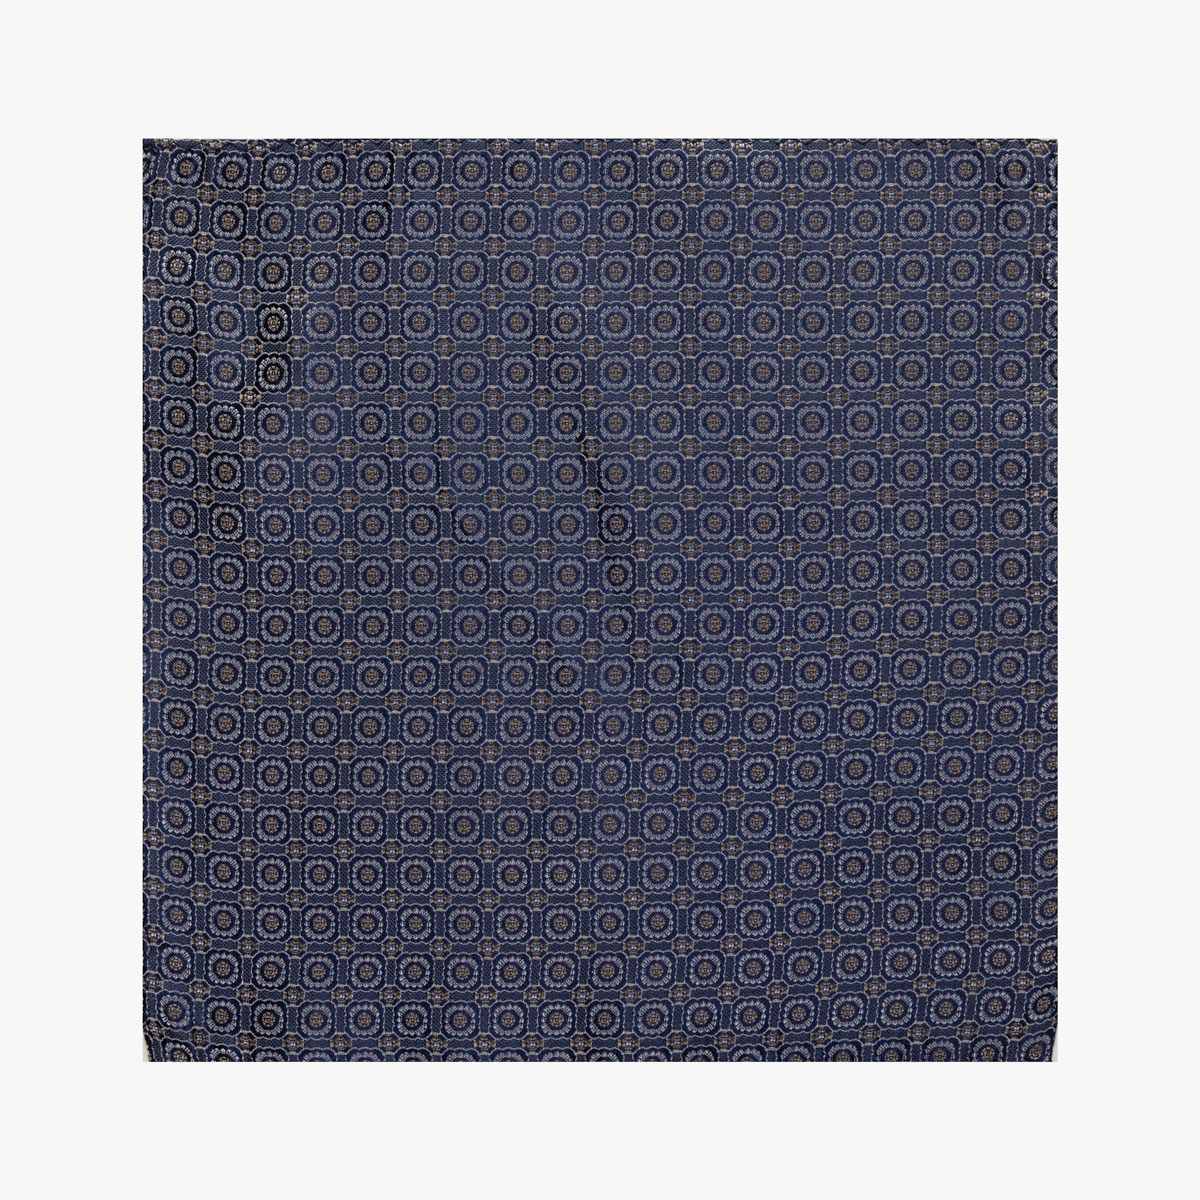 Einstecktuch mit geometrischem Muster in grau blau